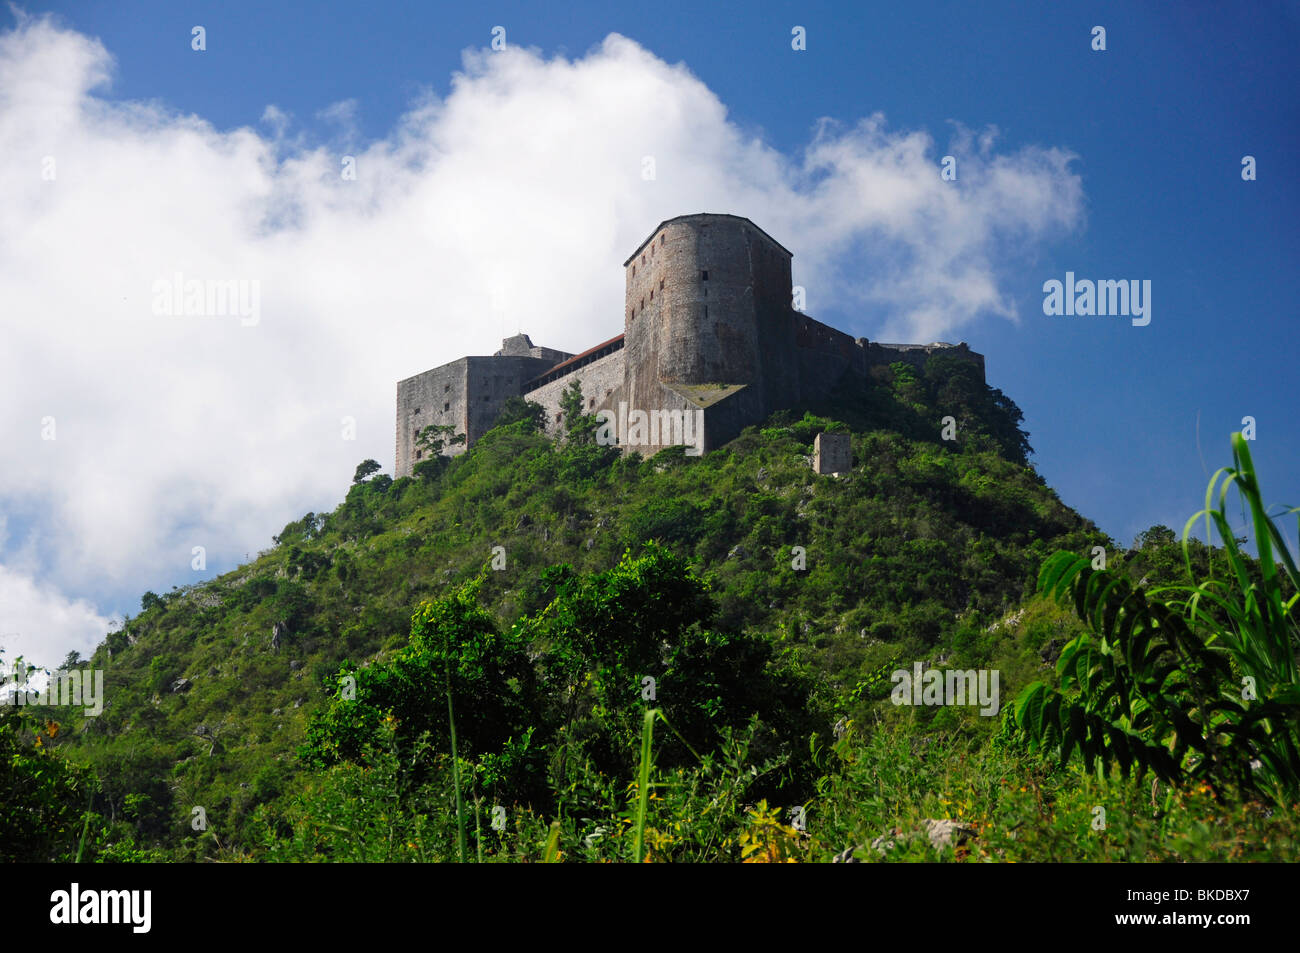 La citadelle Vue de dessous, Milot, Cap-Haïtien, Haïti, Hispaniola, Grandes Antilles, Caraïbes, Amériques Banque D'Images